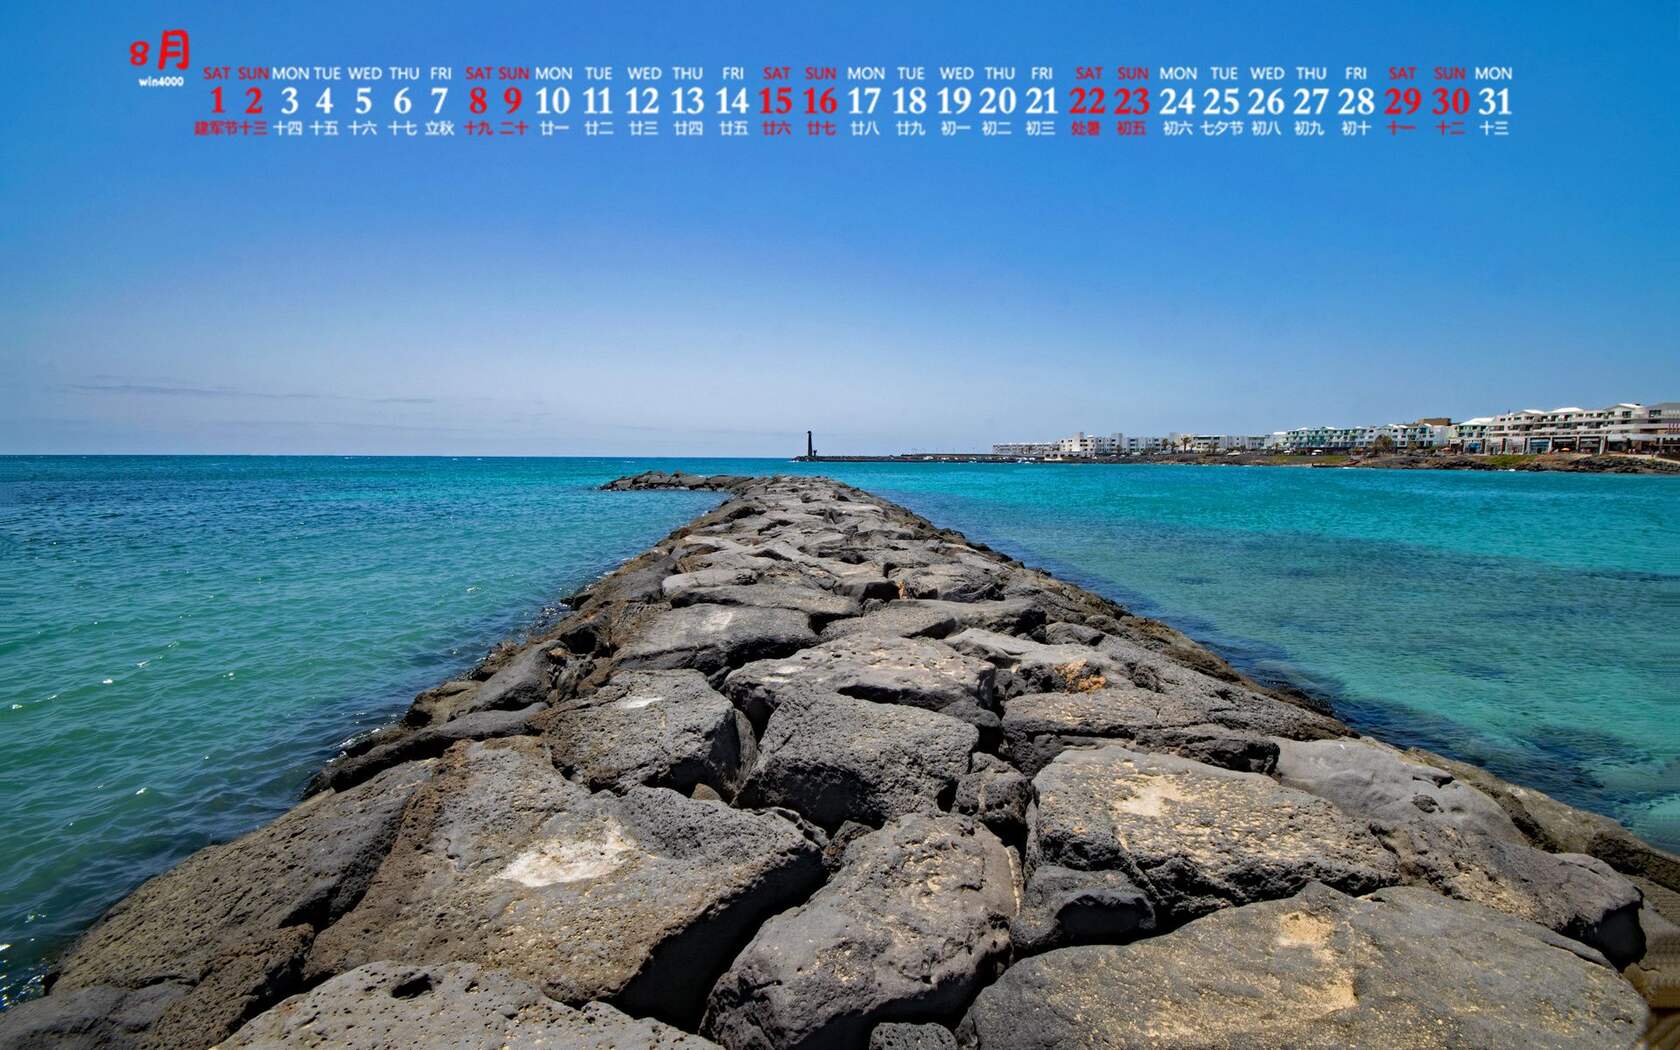 赏心悦目的大海，海岛风景图片，精选2020年8月风景日历壁纸图片套图2